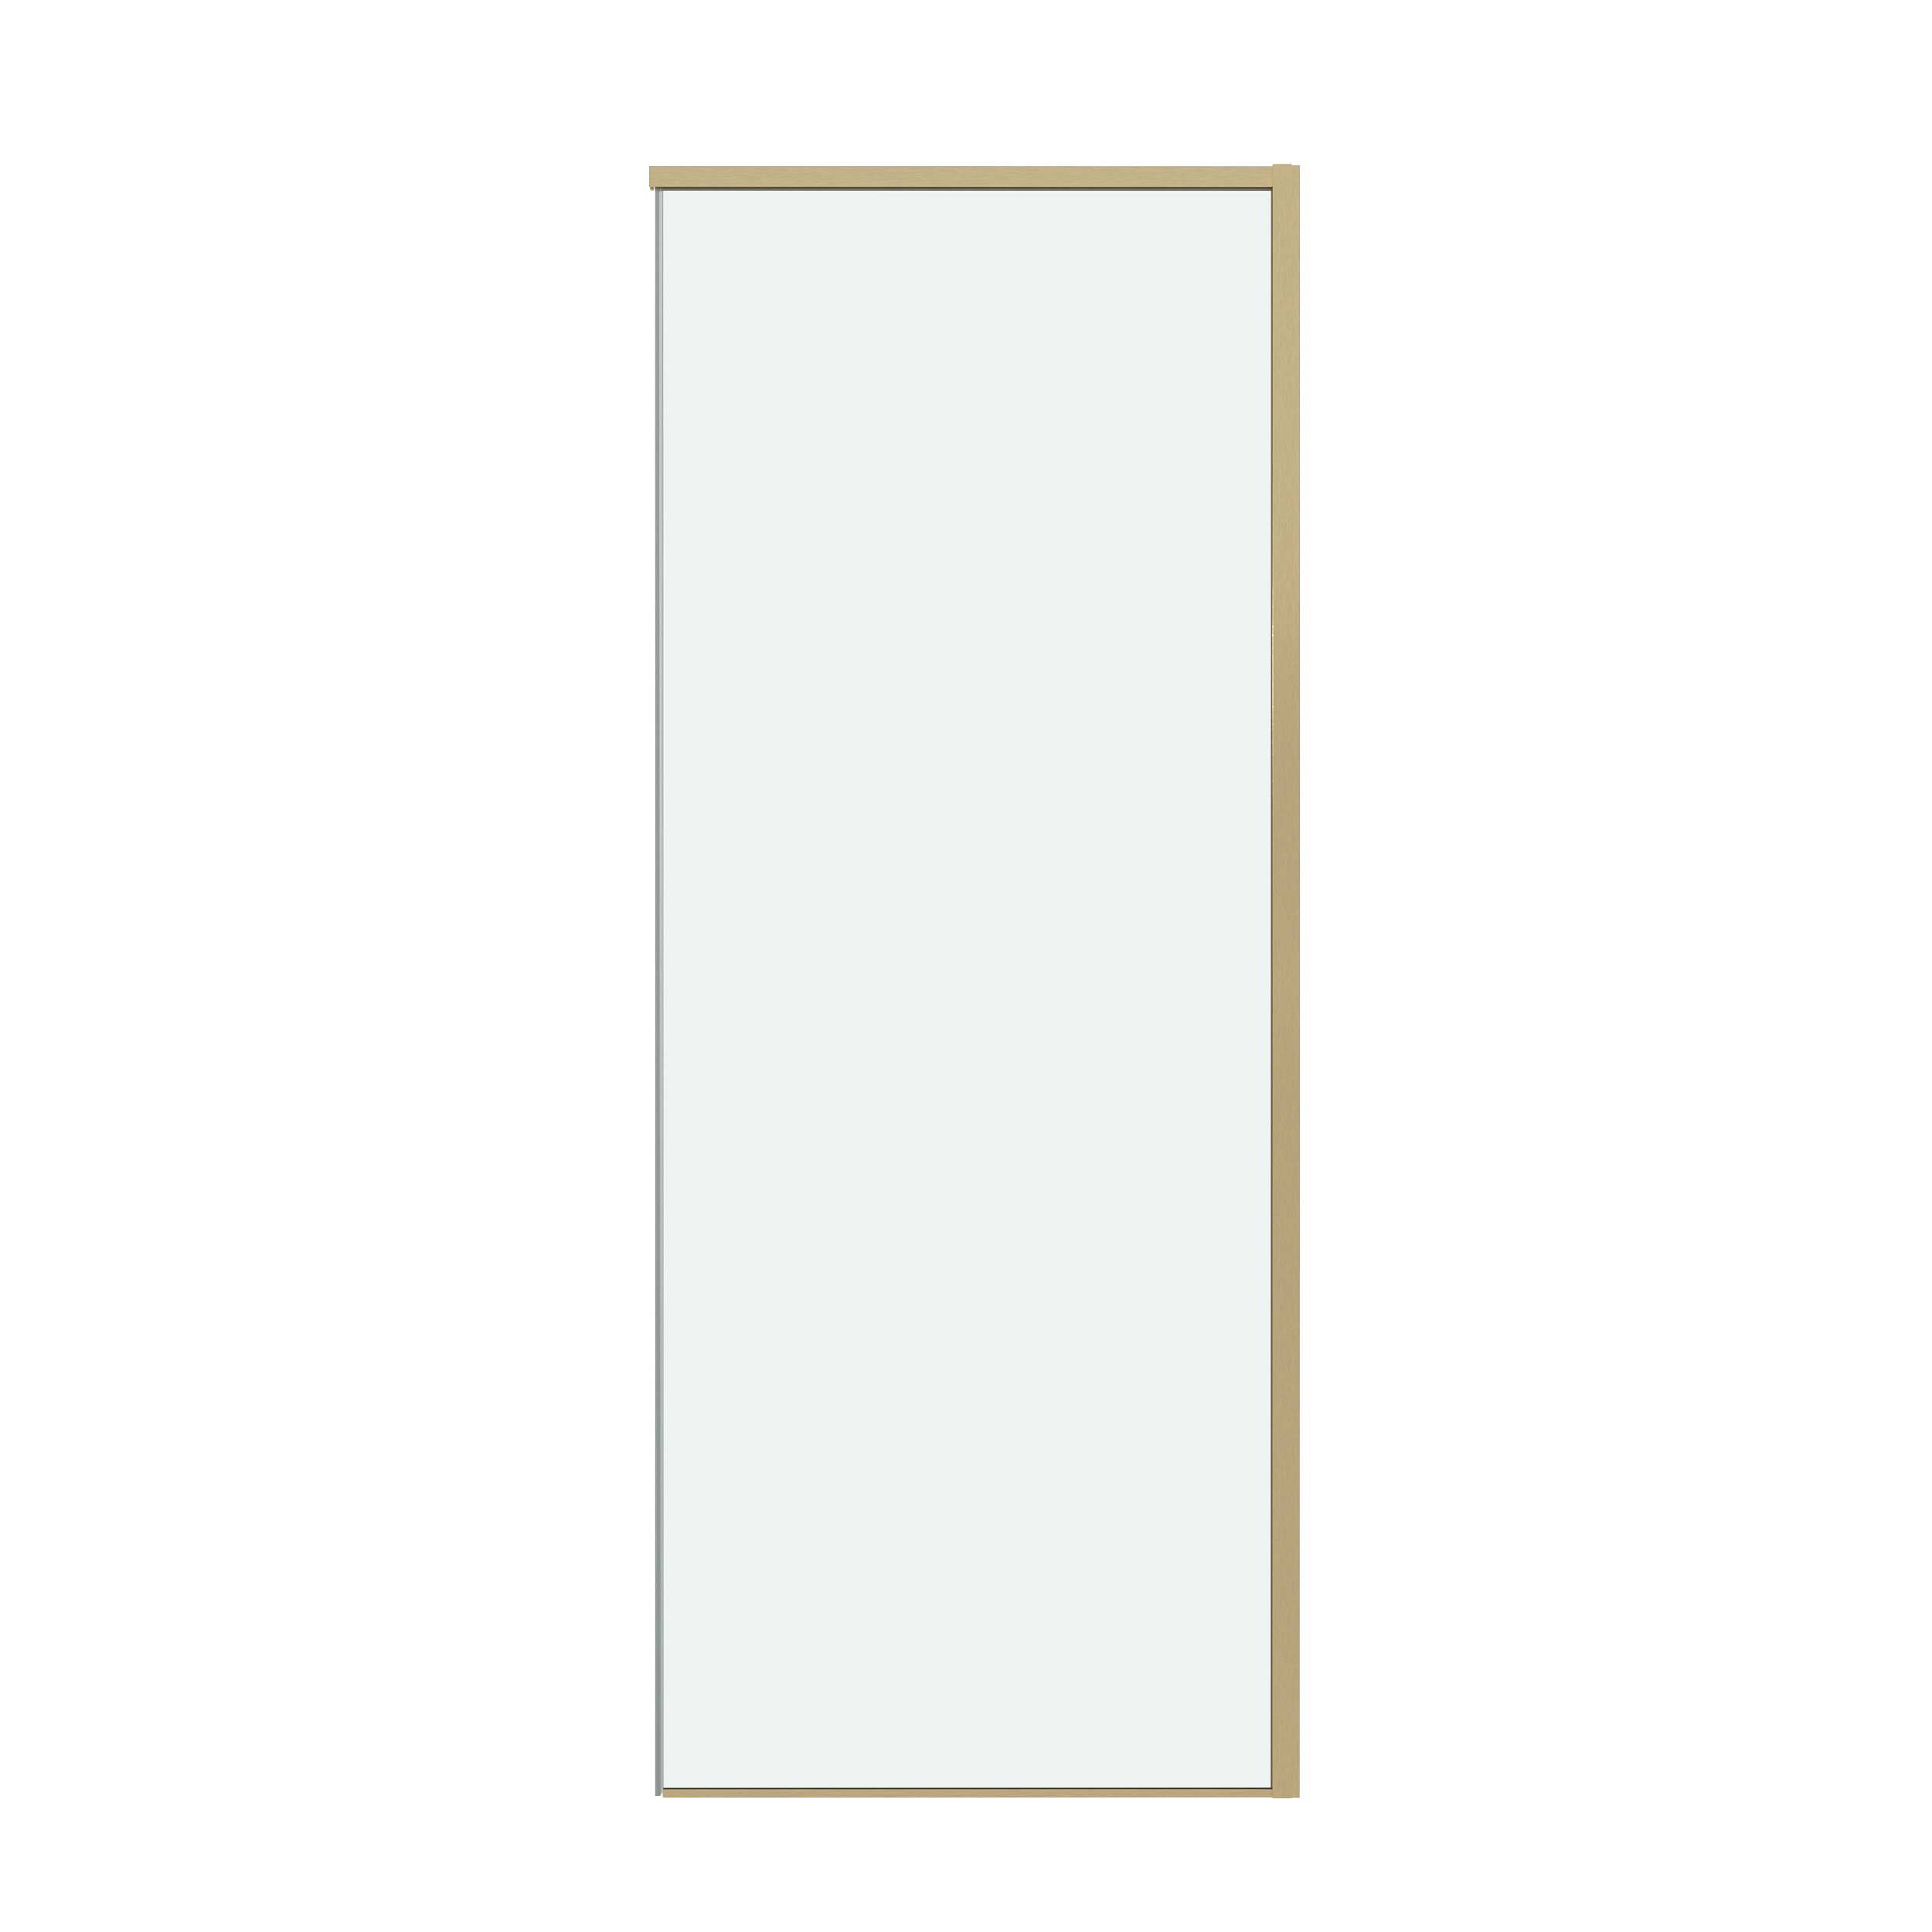 Боковая стенка Grossman Galaxy 80x195 200.K33.01.80.32.00 стекло прозрачное, профиль золото